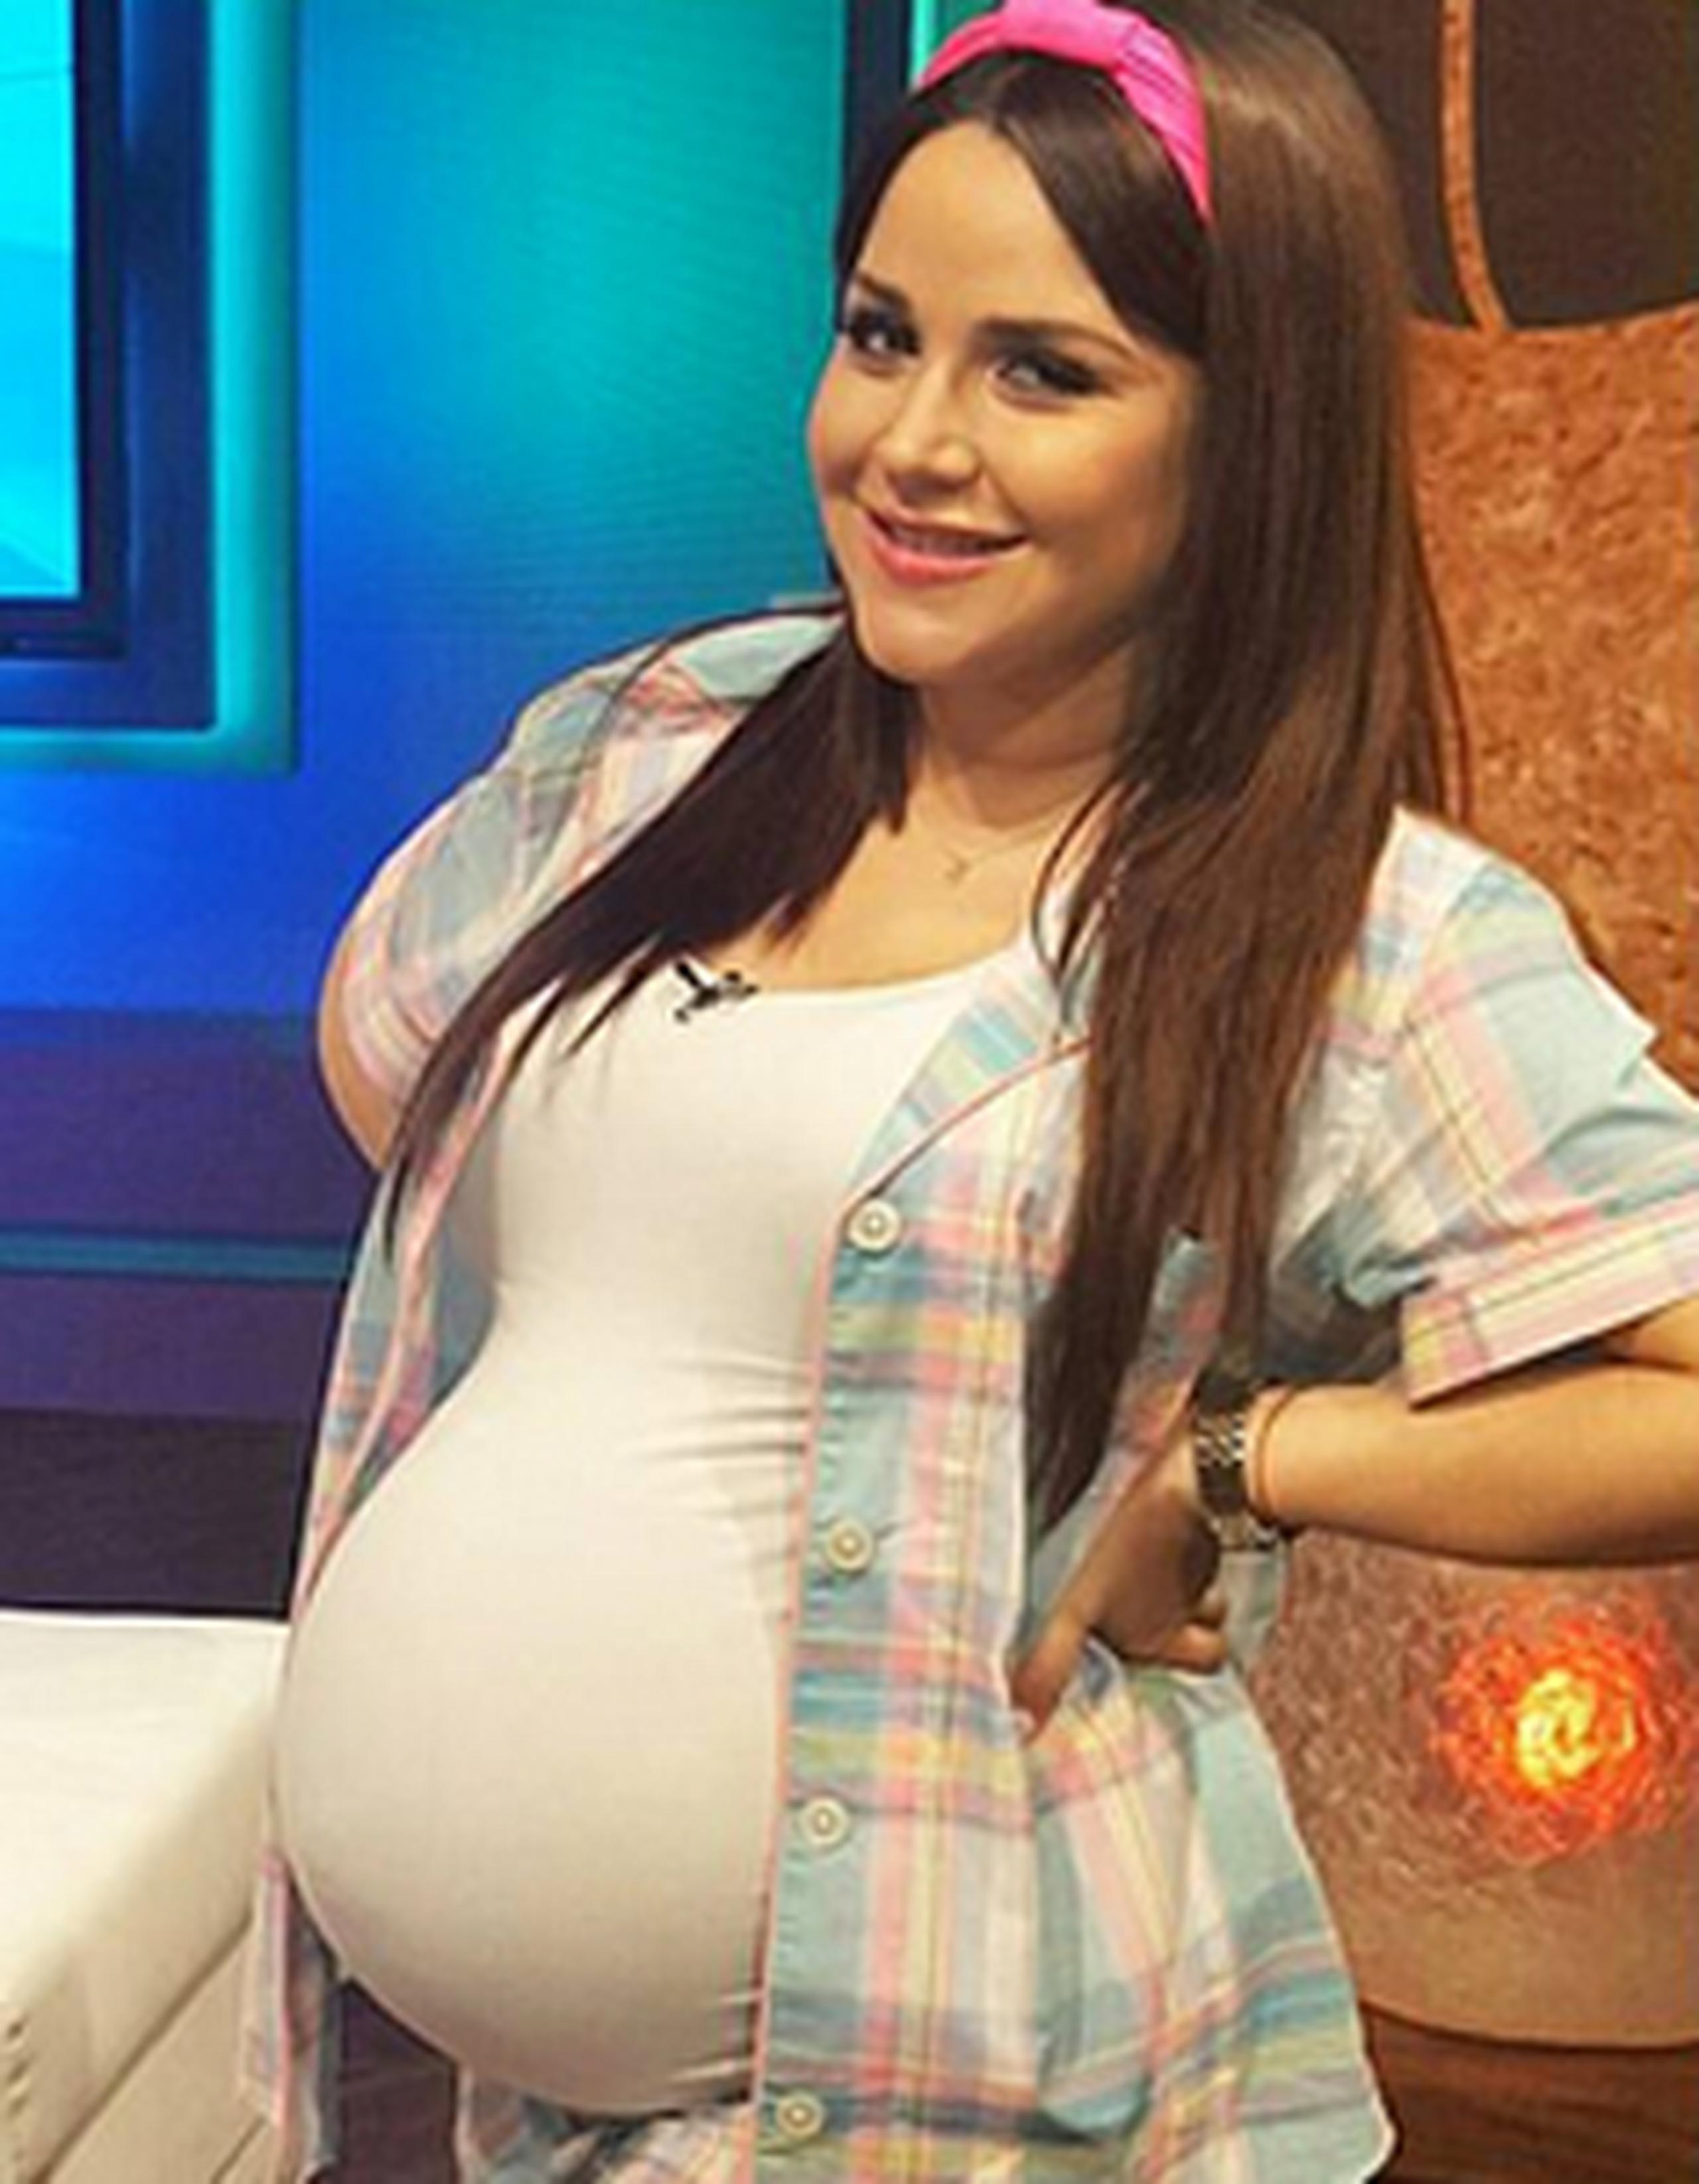 La animadora comparte a diario imágenes y vídeos de su hija Kamilia, que ya tiene 3 semanas de nacida. (Instagram)